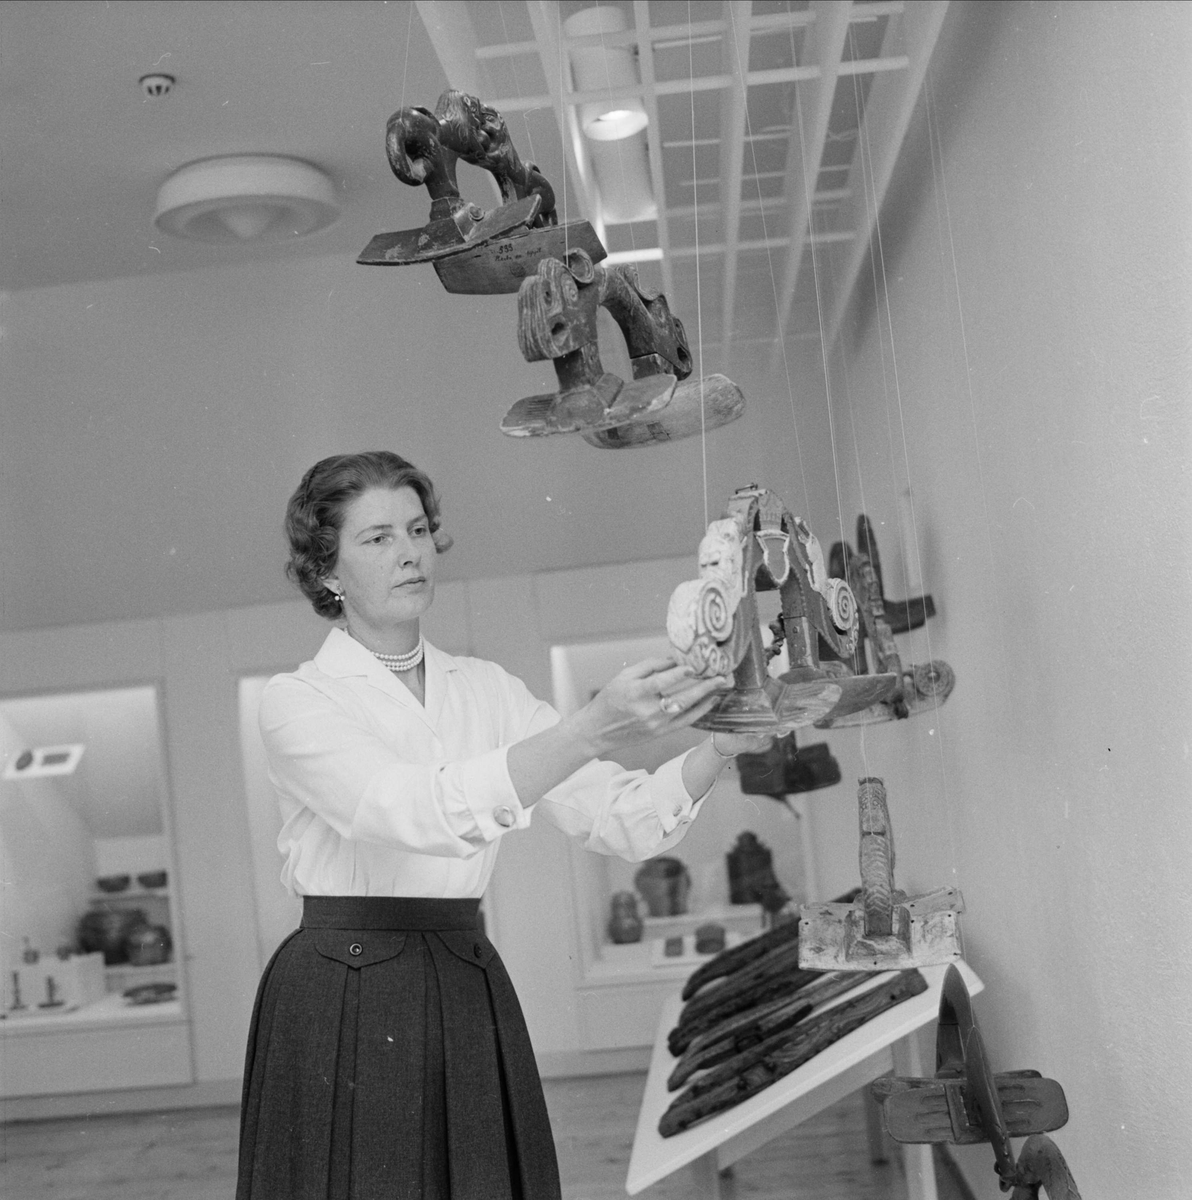 Anna-Märta Berg i galleriet för folkkonst på Upplandsmuseet som "slår upp portarna till stilfull kontakt med kultur", Uppsala juni 1959